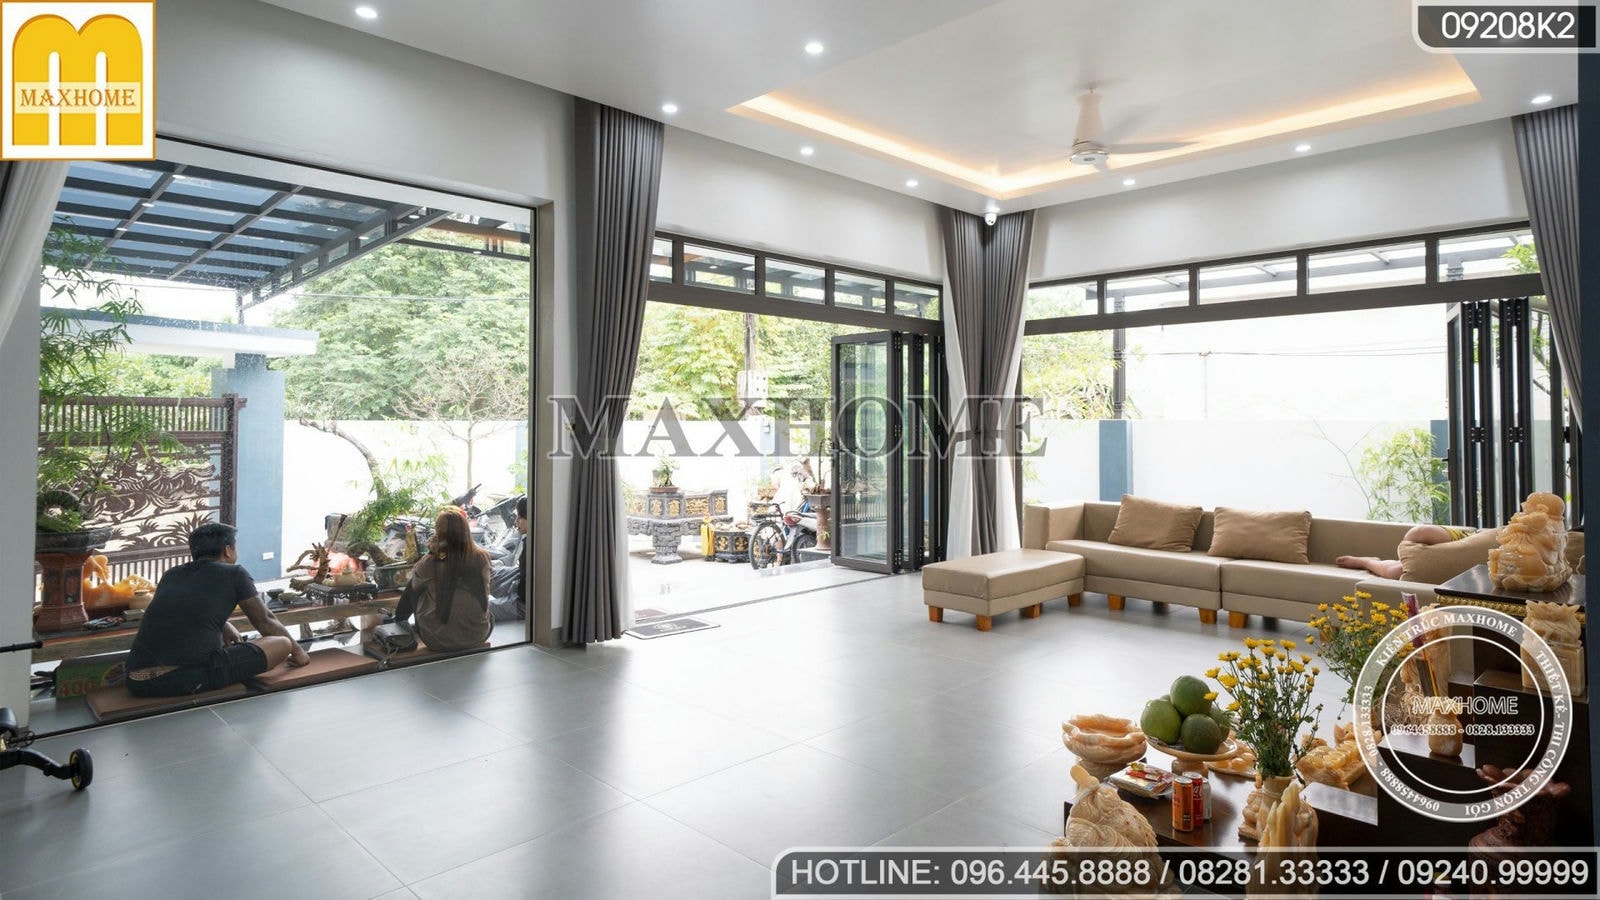 Nội thất đẹp hiện đại, tinh tế cho ngôi nhà phố 2 tầng tại Quảng Ninh | MH01848